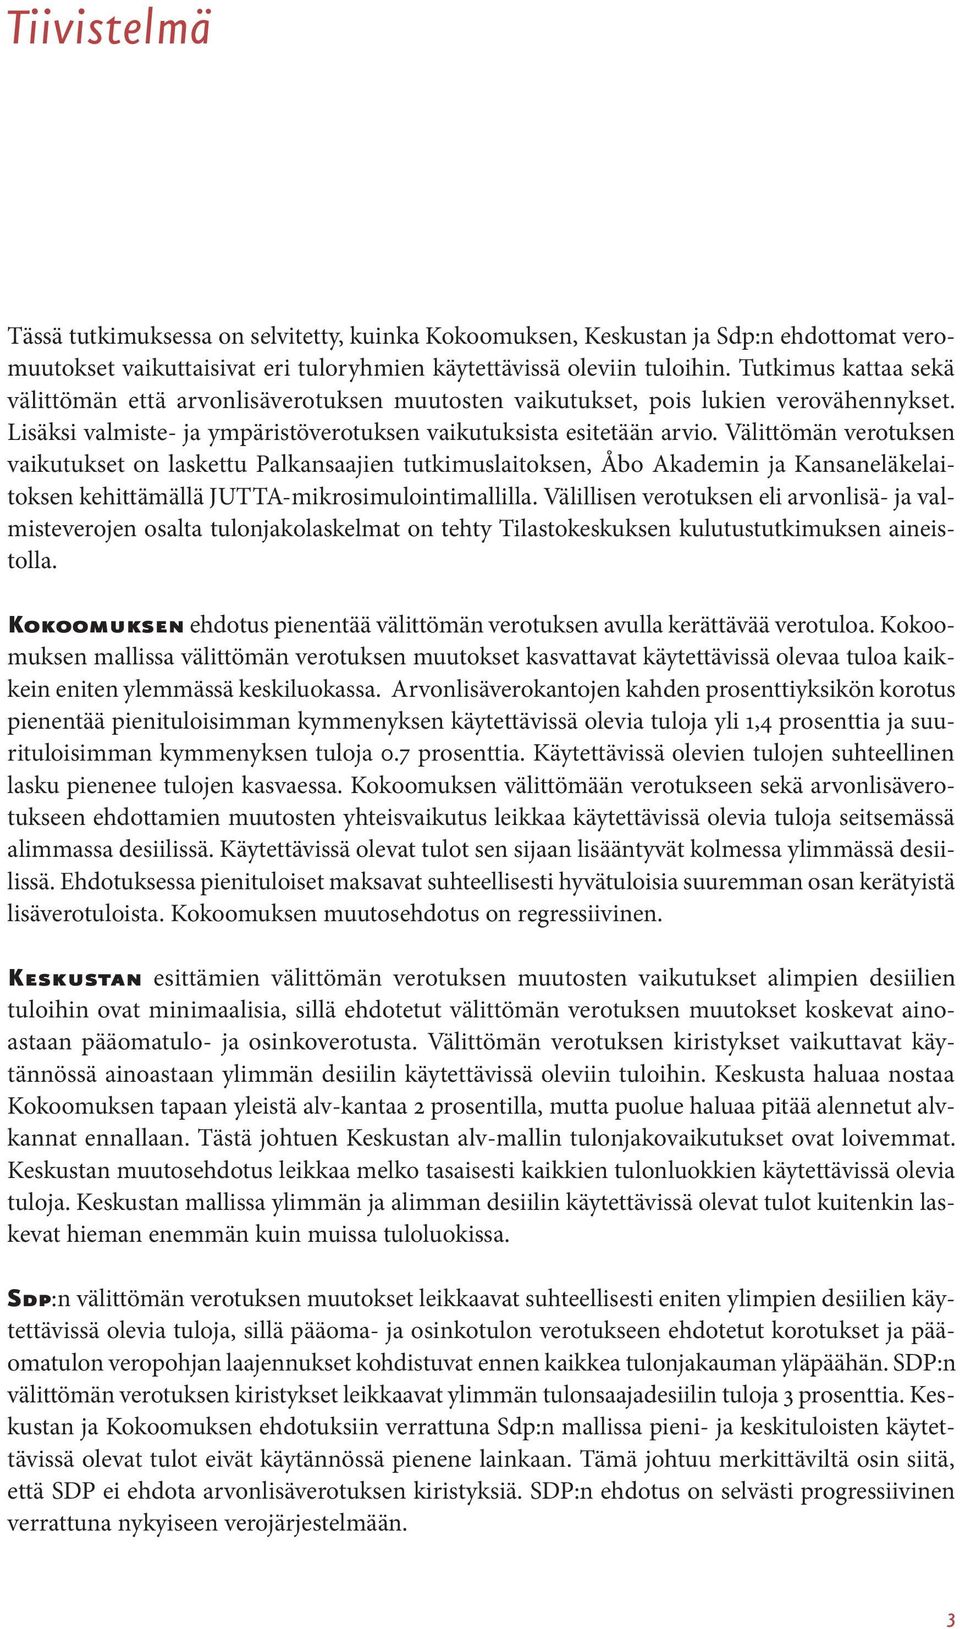 Välittömän verotuksen vaikutukset on laskettu Palkansaajien tutkimuslaitoksen, Åbo Akademin ja Kansaneläkelaitoksen kehittämällä JUTTA-mikrosimulointimallilla.